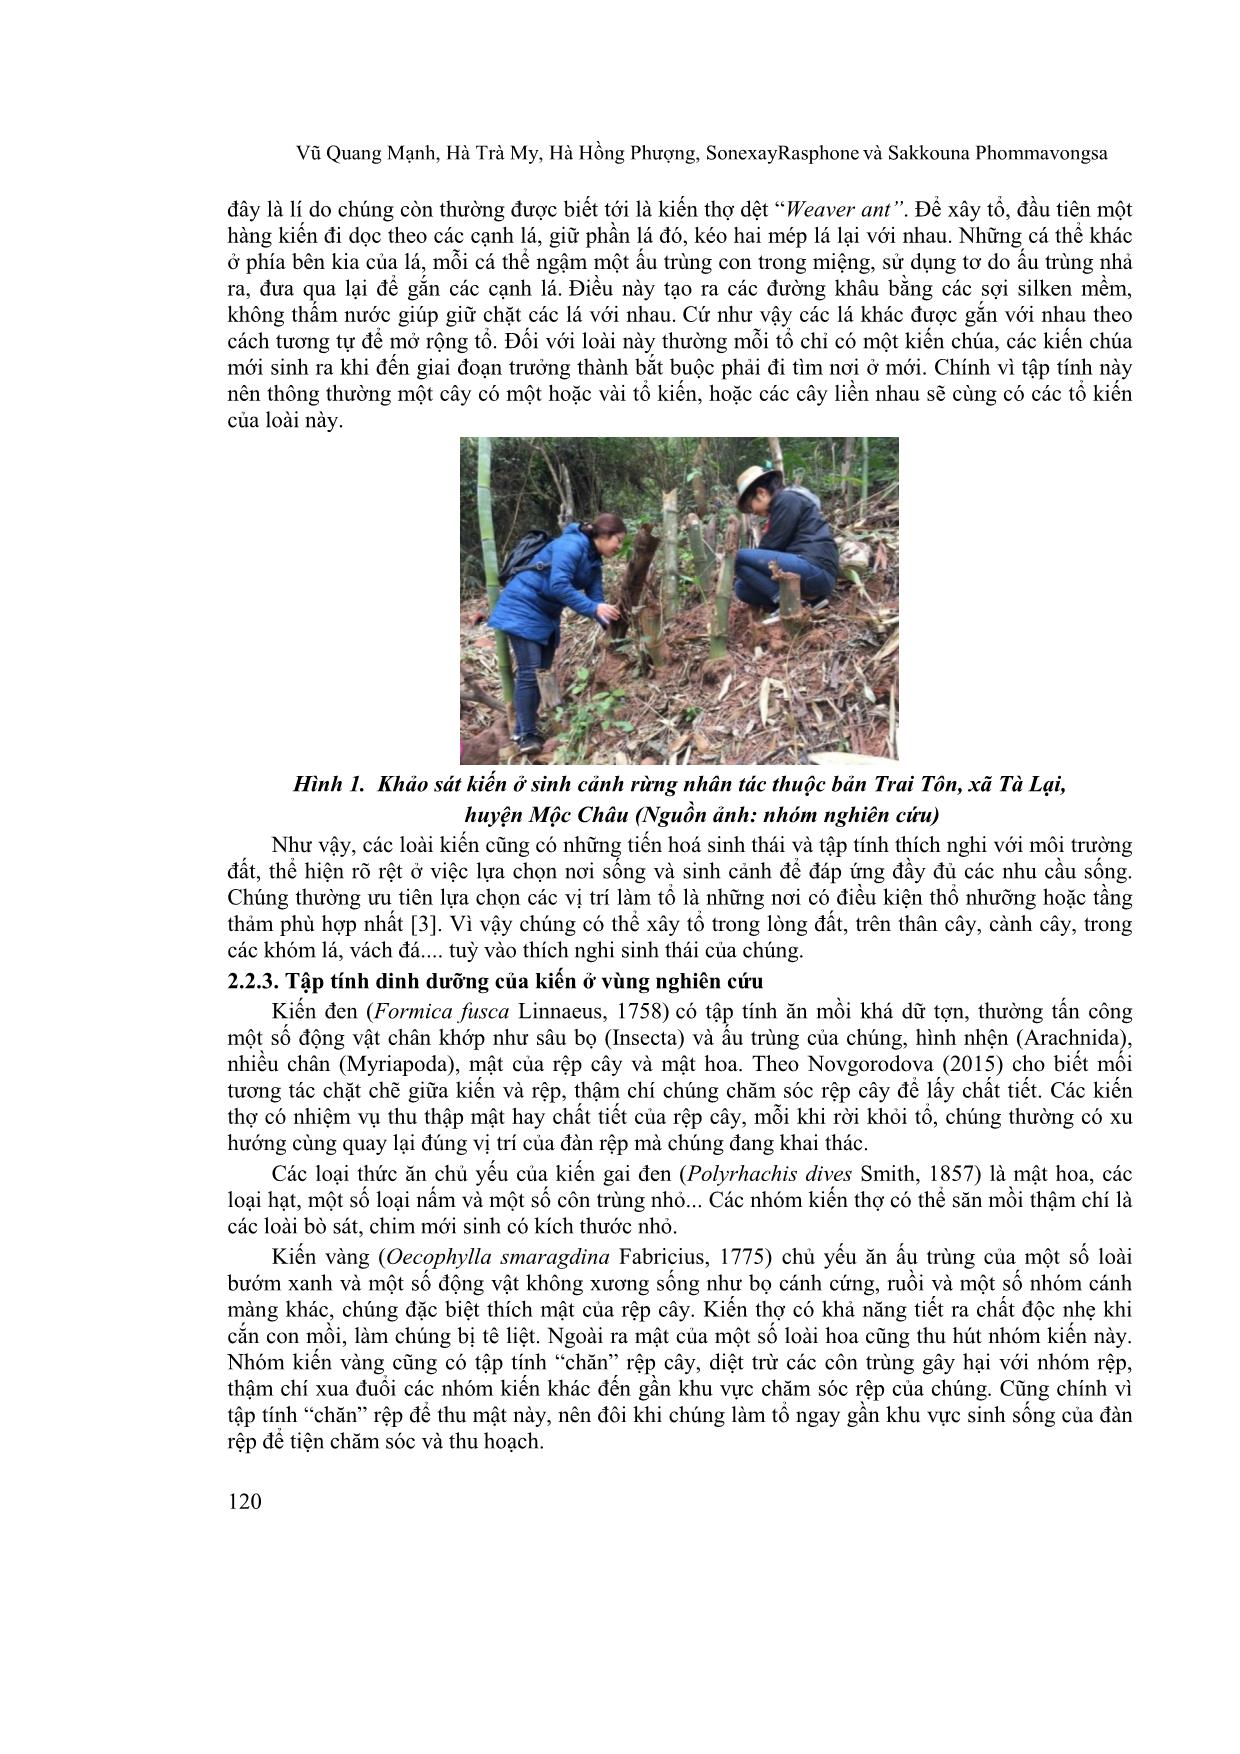 Bước đầu nghiên cứu kiến (Hymenoptera: Formicidae) món ăn đặc sản truyền thống ở cao nguyên Mộc Châu, tỉnh Sơn La trang 4